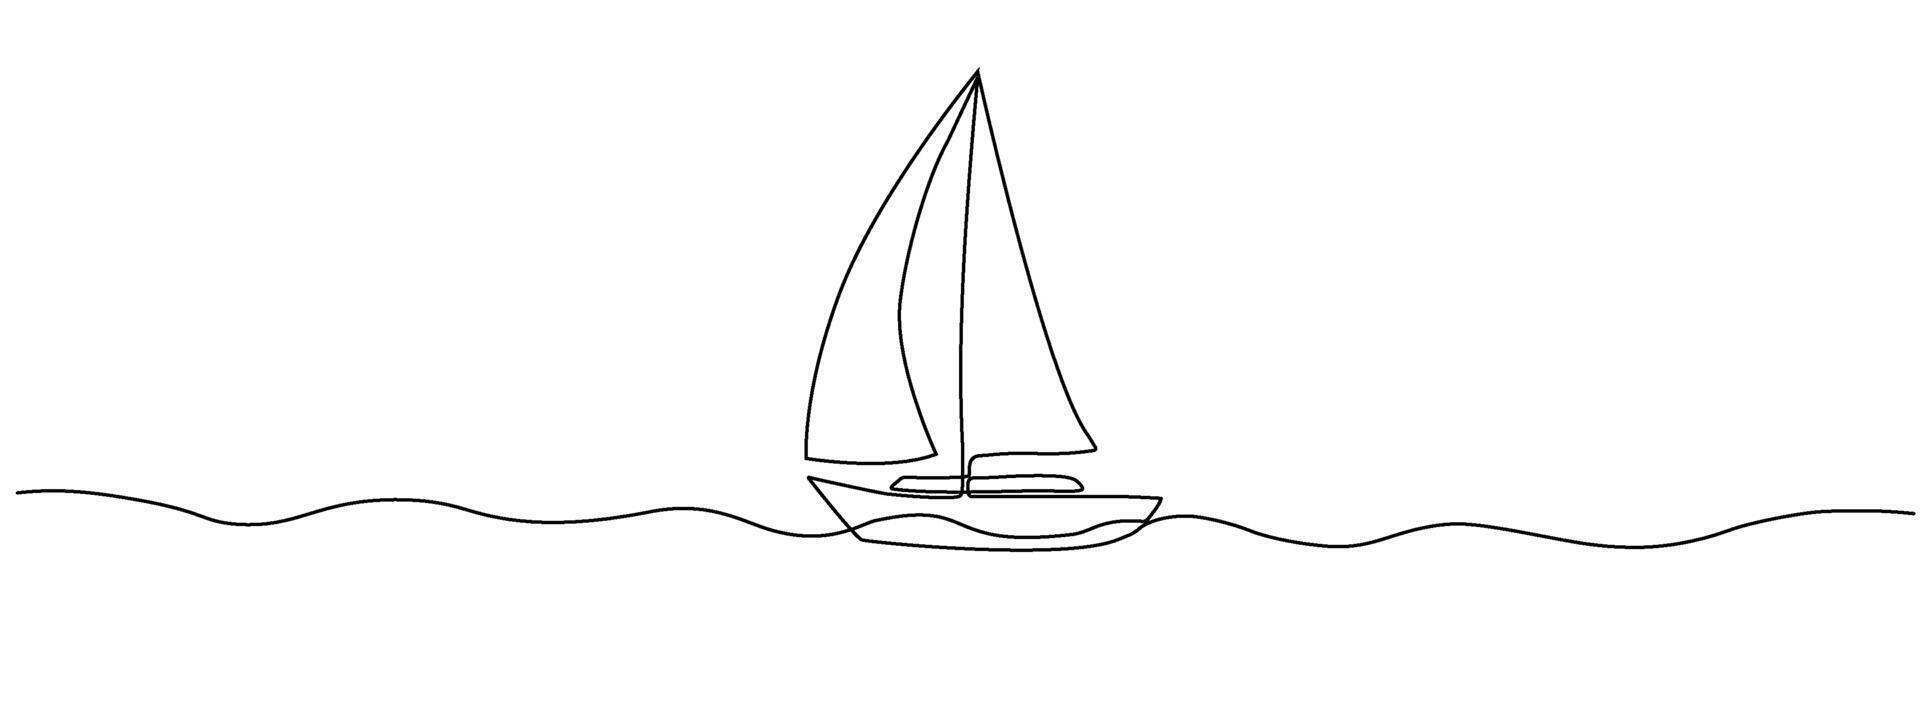 voilier dans un continu modifiable doubler. abstrait silhouette de mer pêche bateau. concept de mer Voyage sur une yacht. symbole de tourisme affaires idée. vecteur illustration dans Facile linéaire style